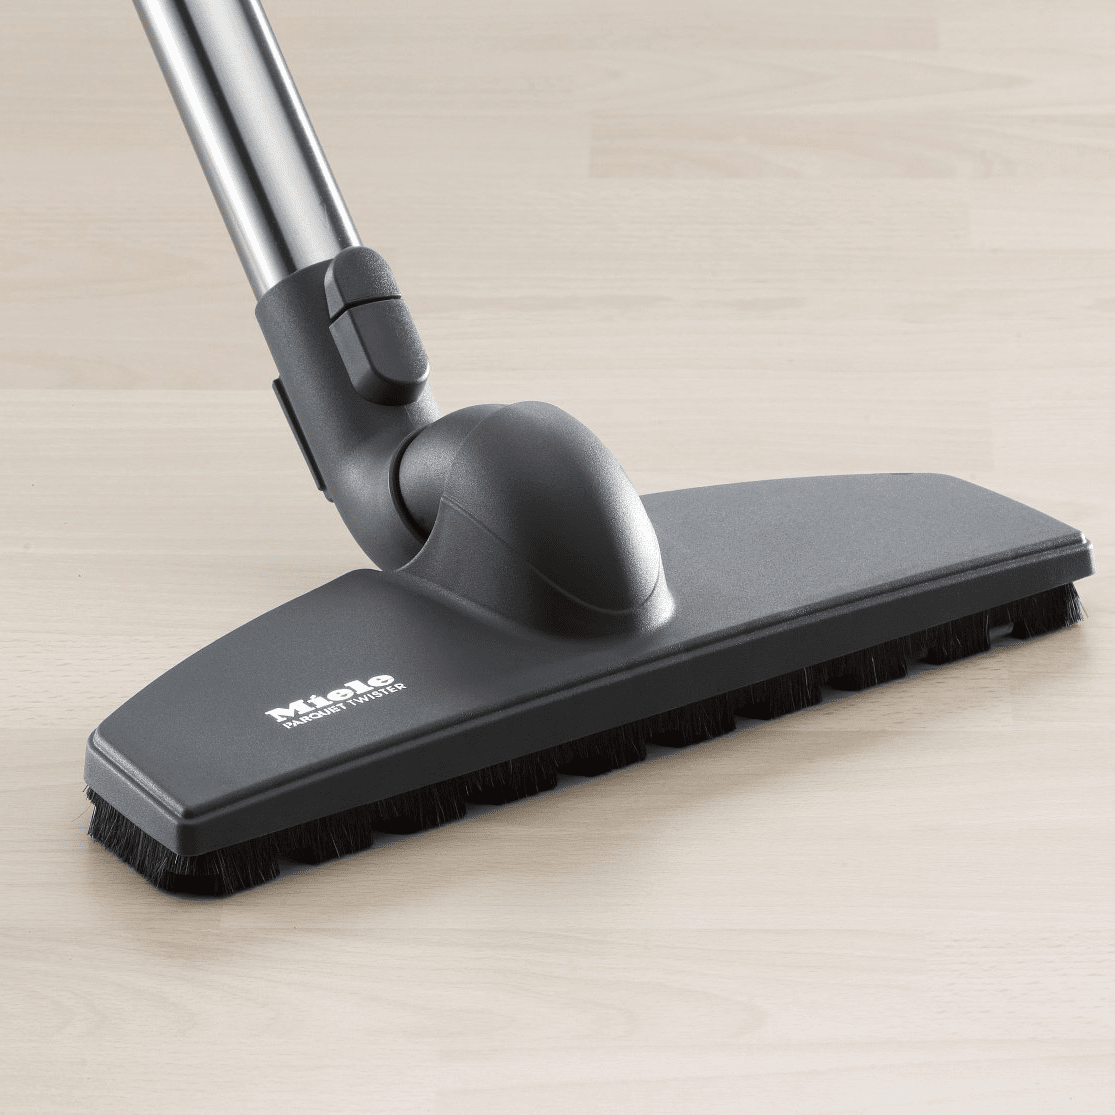 Miele Sbb 300 3 Parquet Twister Brush, Miele Vacuum Hardwood Floor Brush